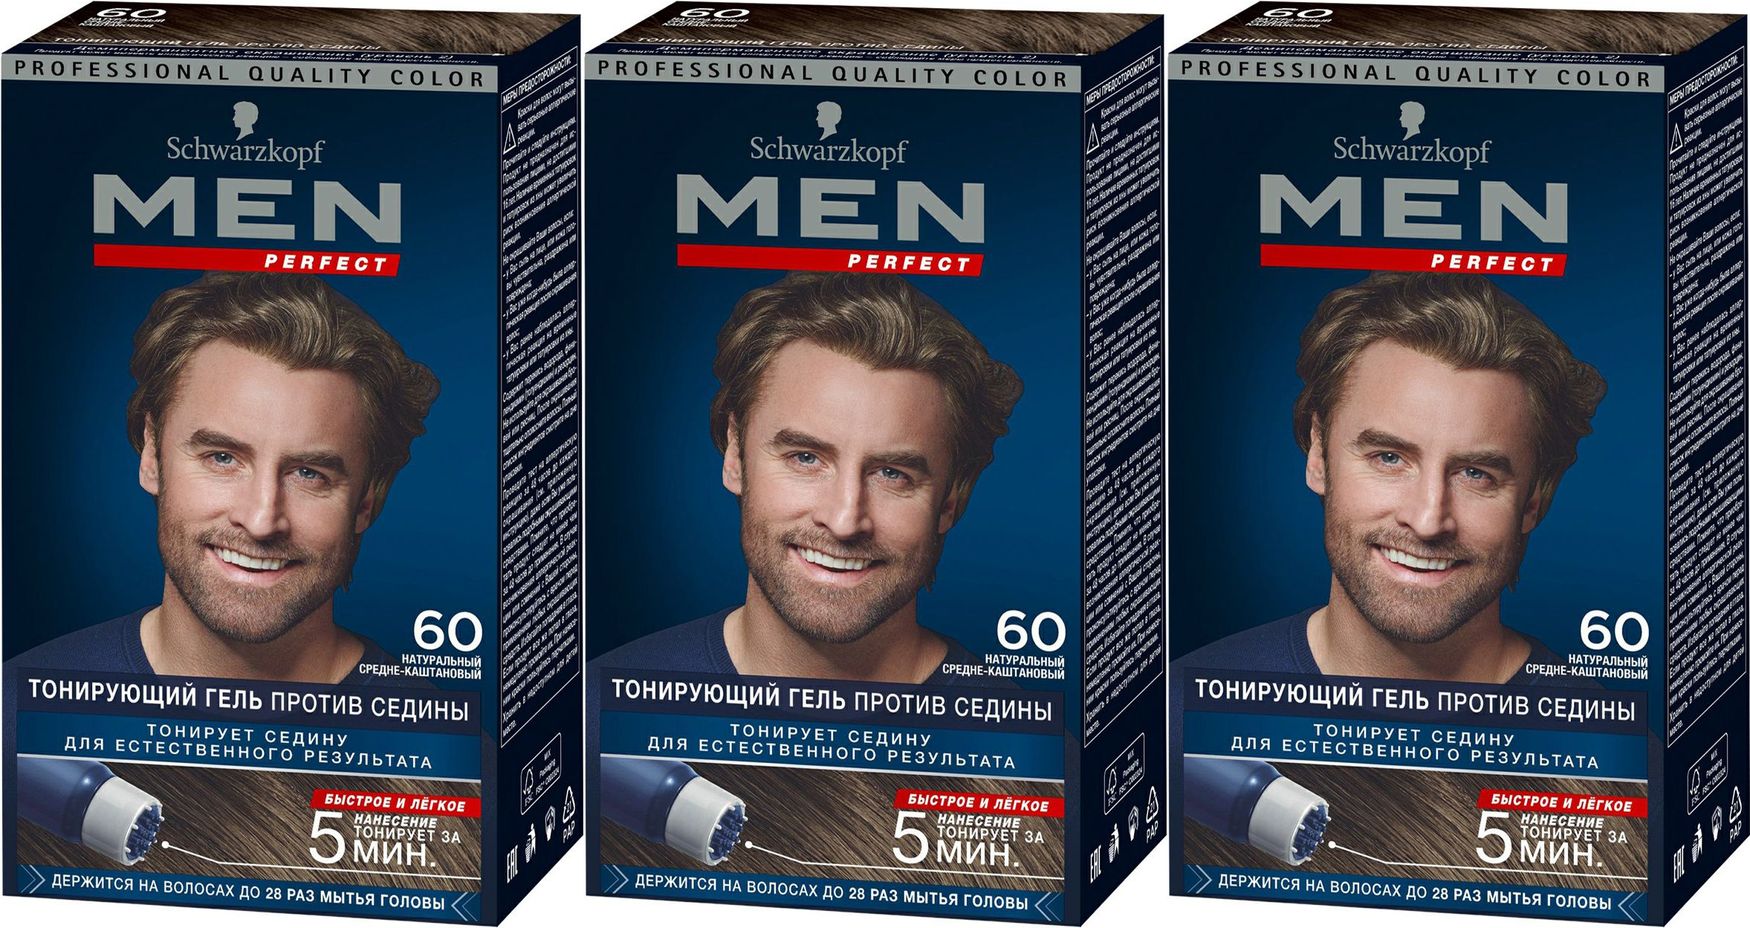 Гель men perfect тонирующий для мужчин, 60 средне-каштановый. Тонирующий гель men. Гель для волос men perfect против седины.